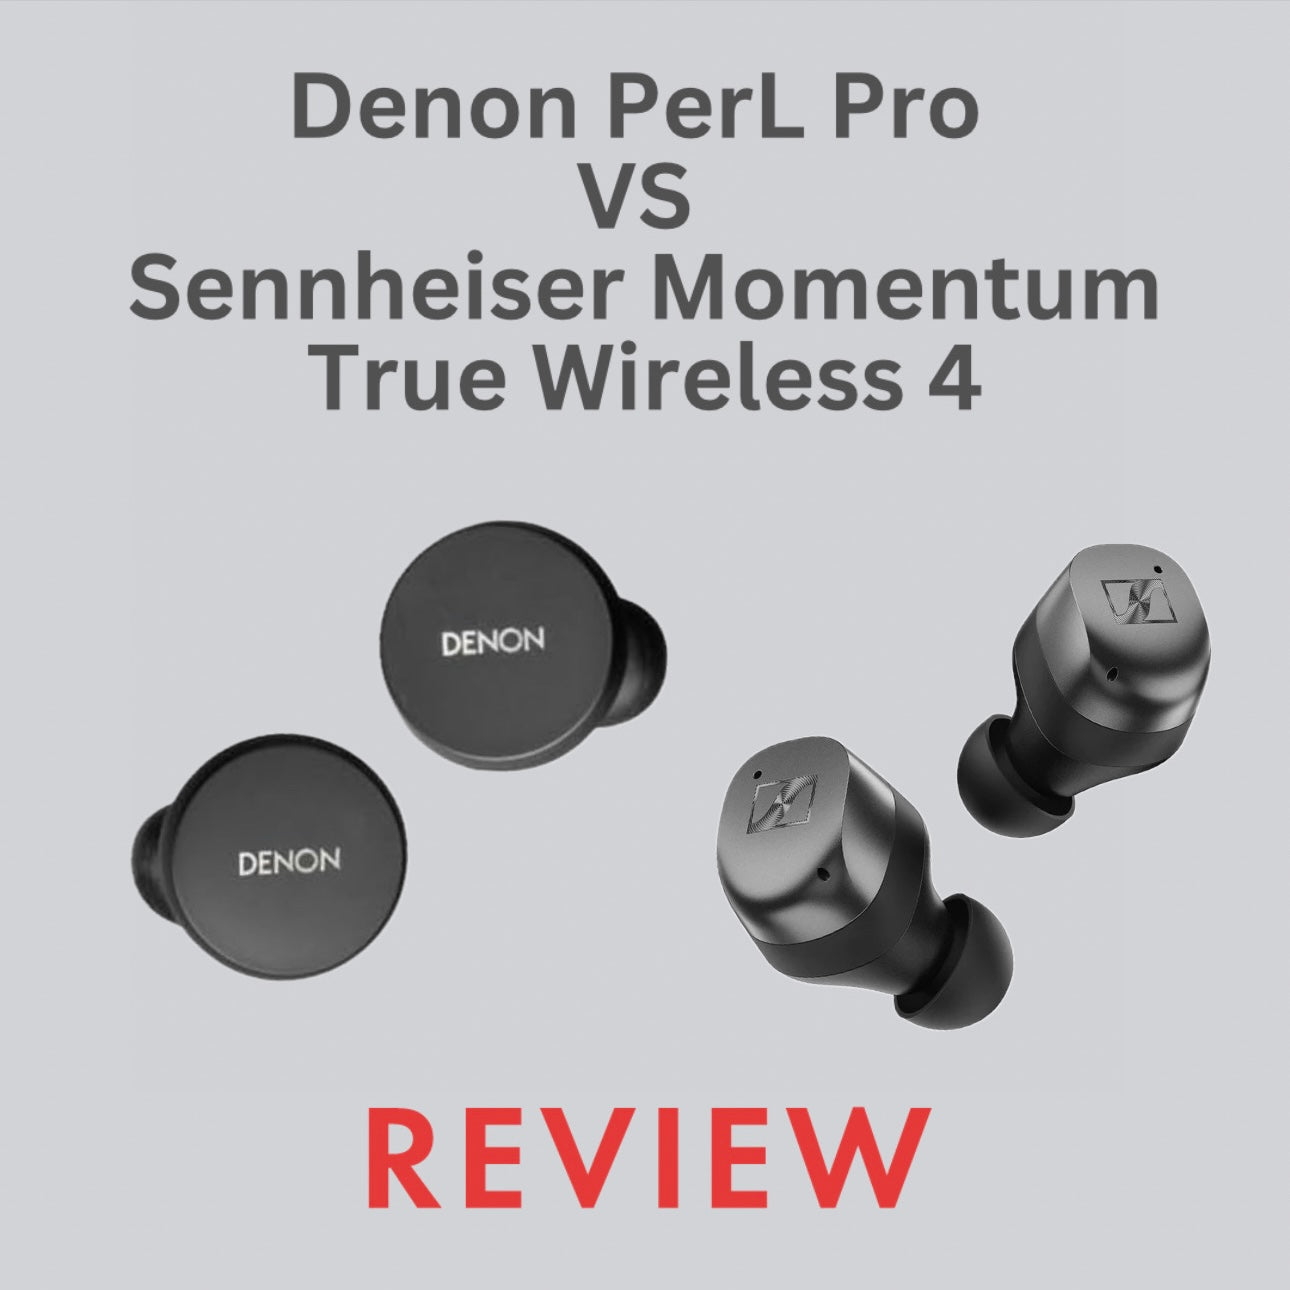 Denon PerL Pro VS Sennheiser Momentum True Wireless 4 - Comparison Review